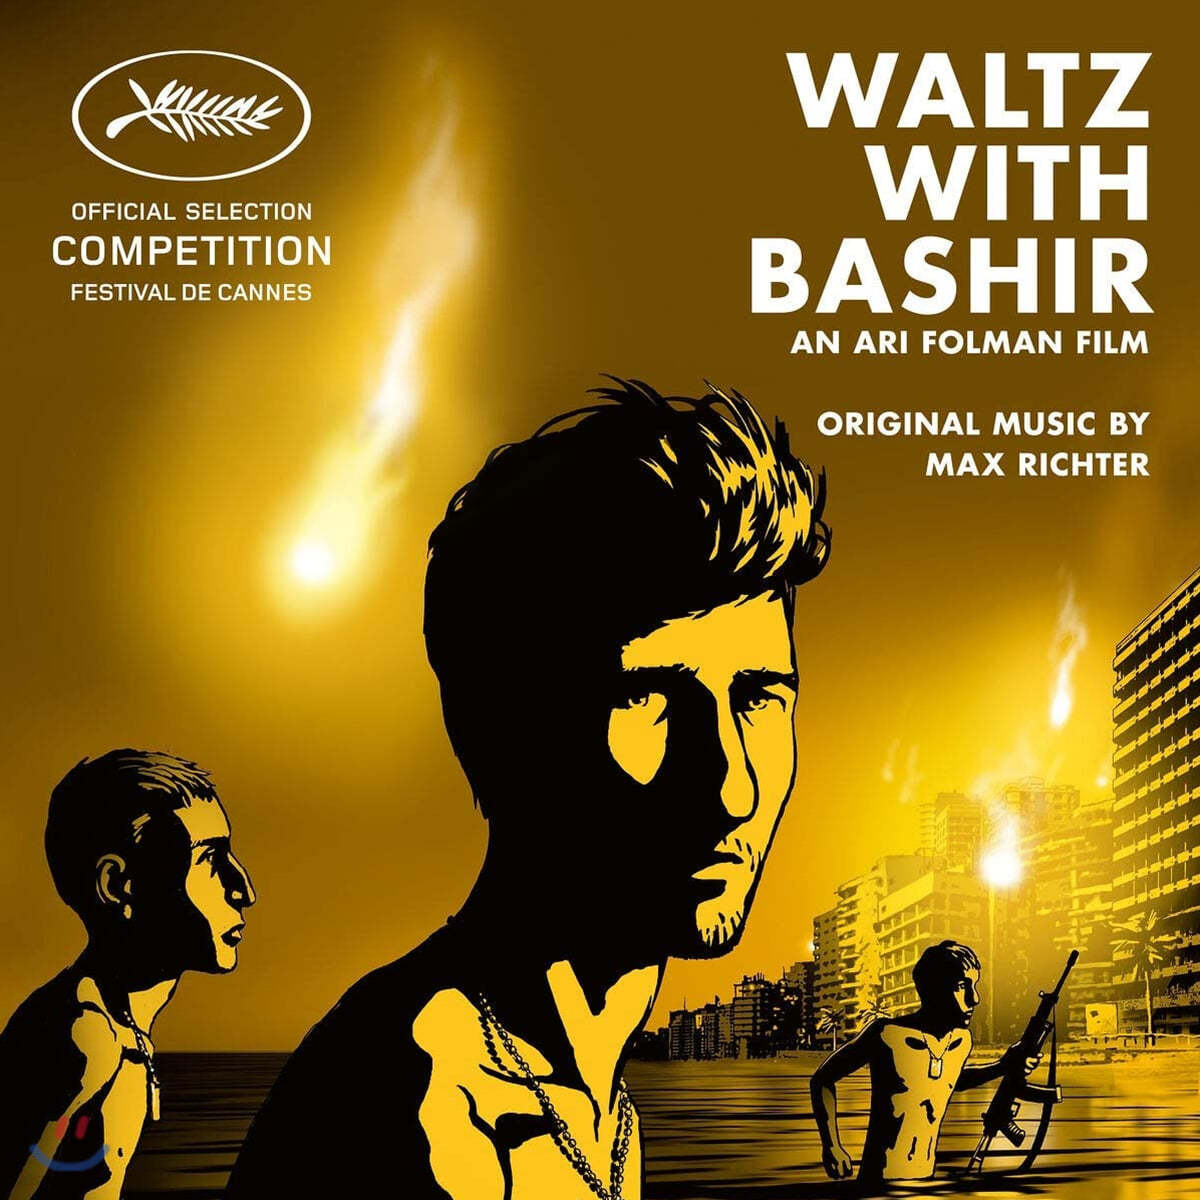 바시르와 왈츠를 영화음악 (Waltz With Bashir OST by Max Richter 막스 리히터)